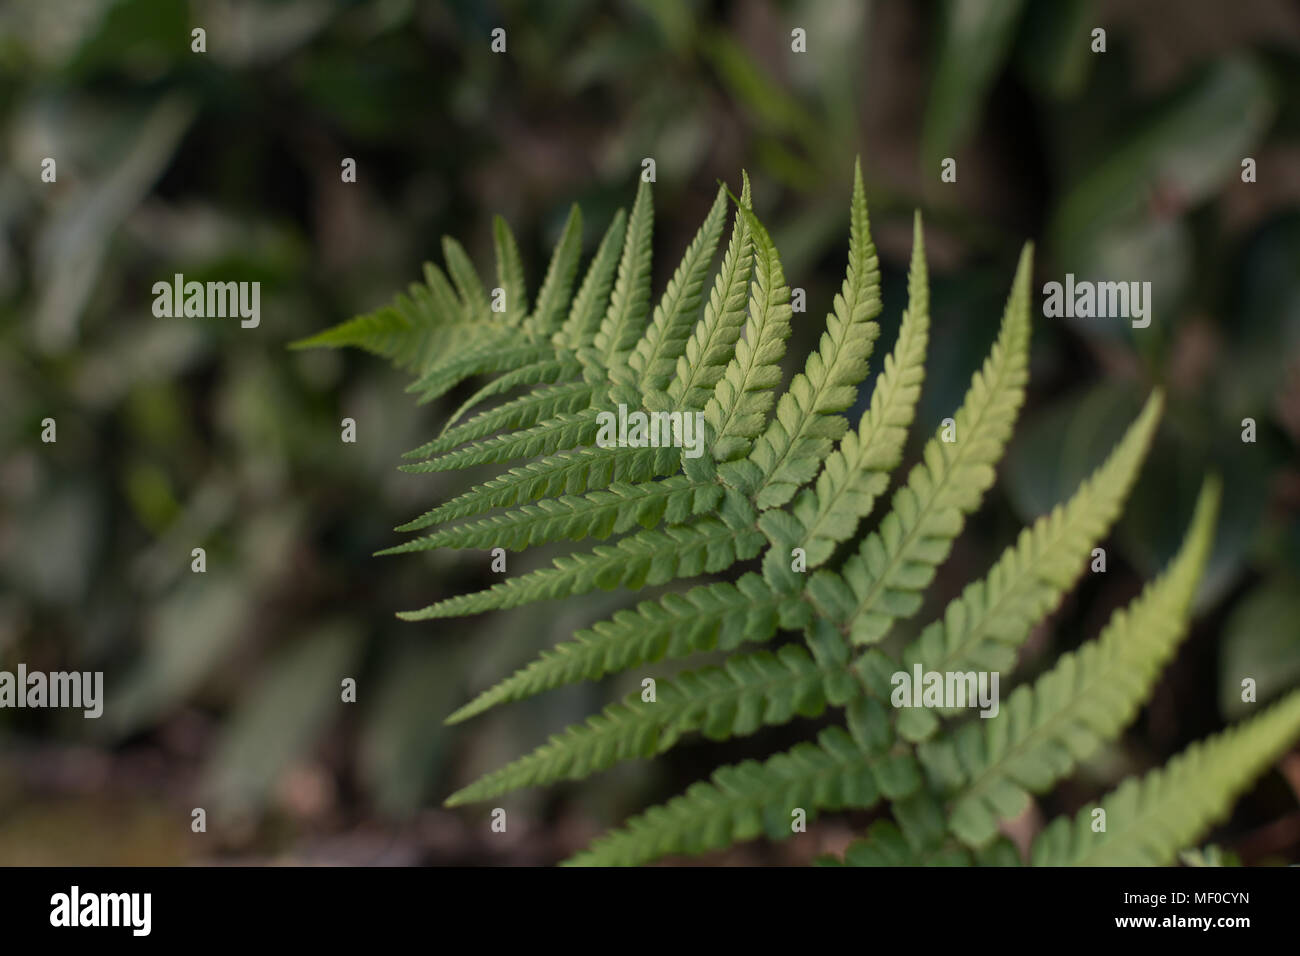 Soft Shield Fern leaf  on garden or wood– polystichum setiferum “Plumosomultilobum” Stock Photo